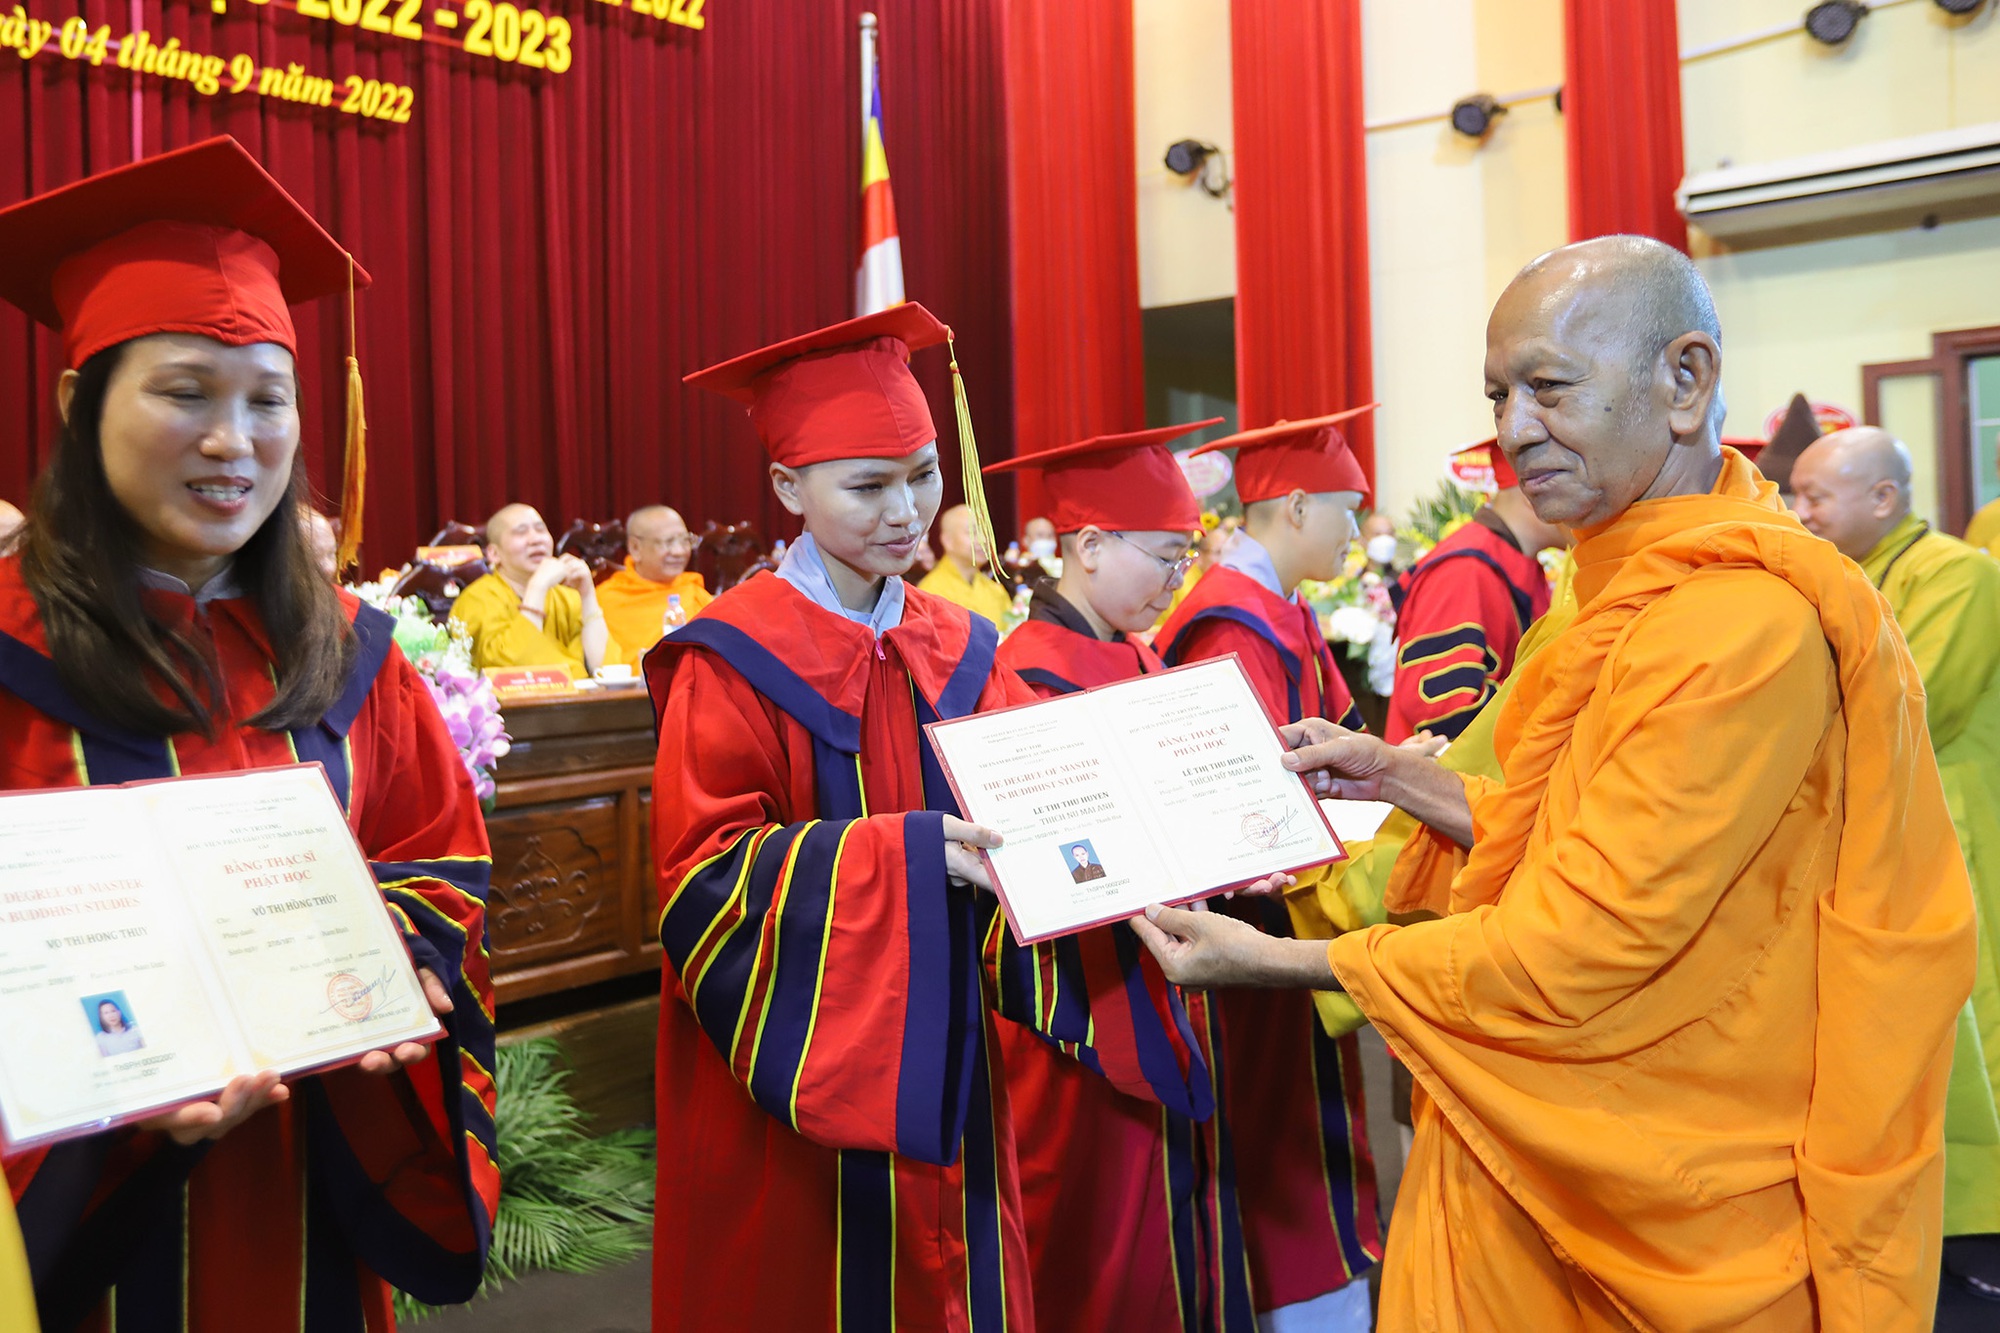 Lễ khai giảng đặc biệt tại ngôi trường có nhiều nhà sư theo học nhất Việt Nam - Ảnh 7.